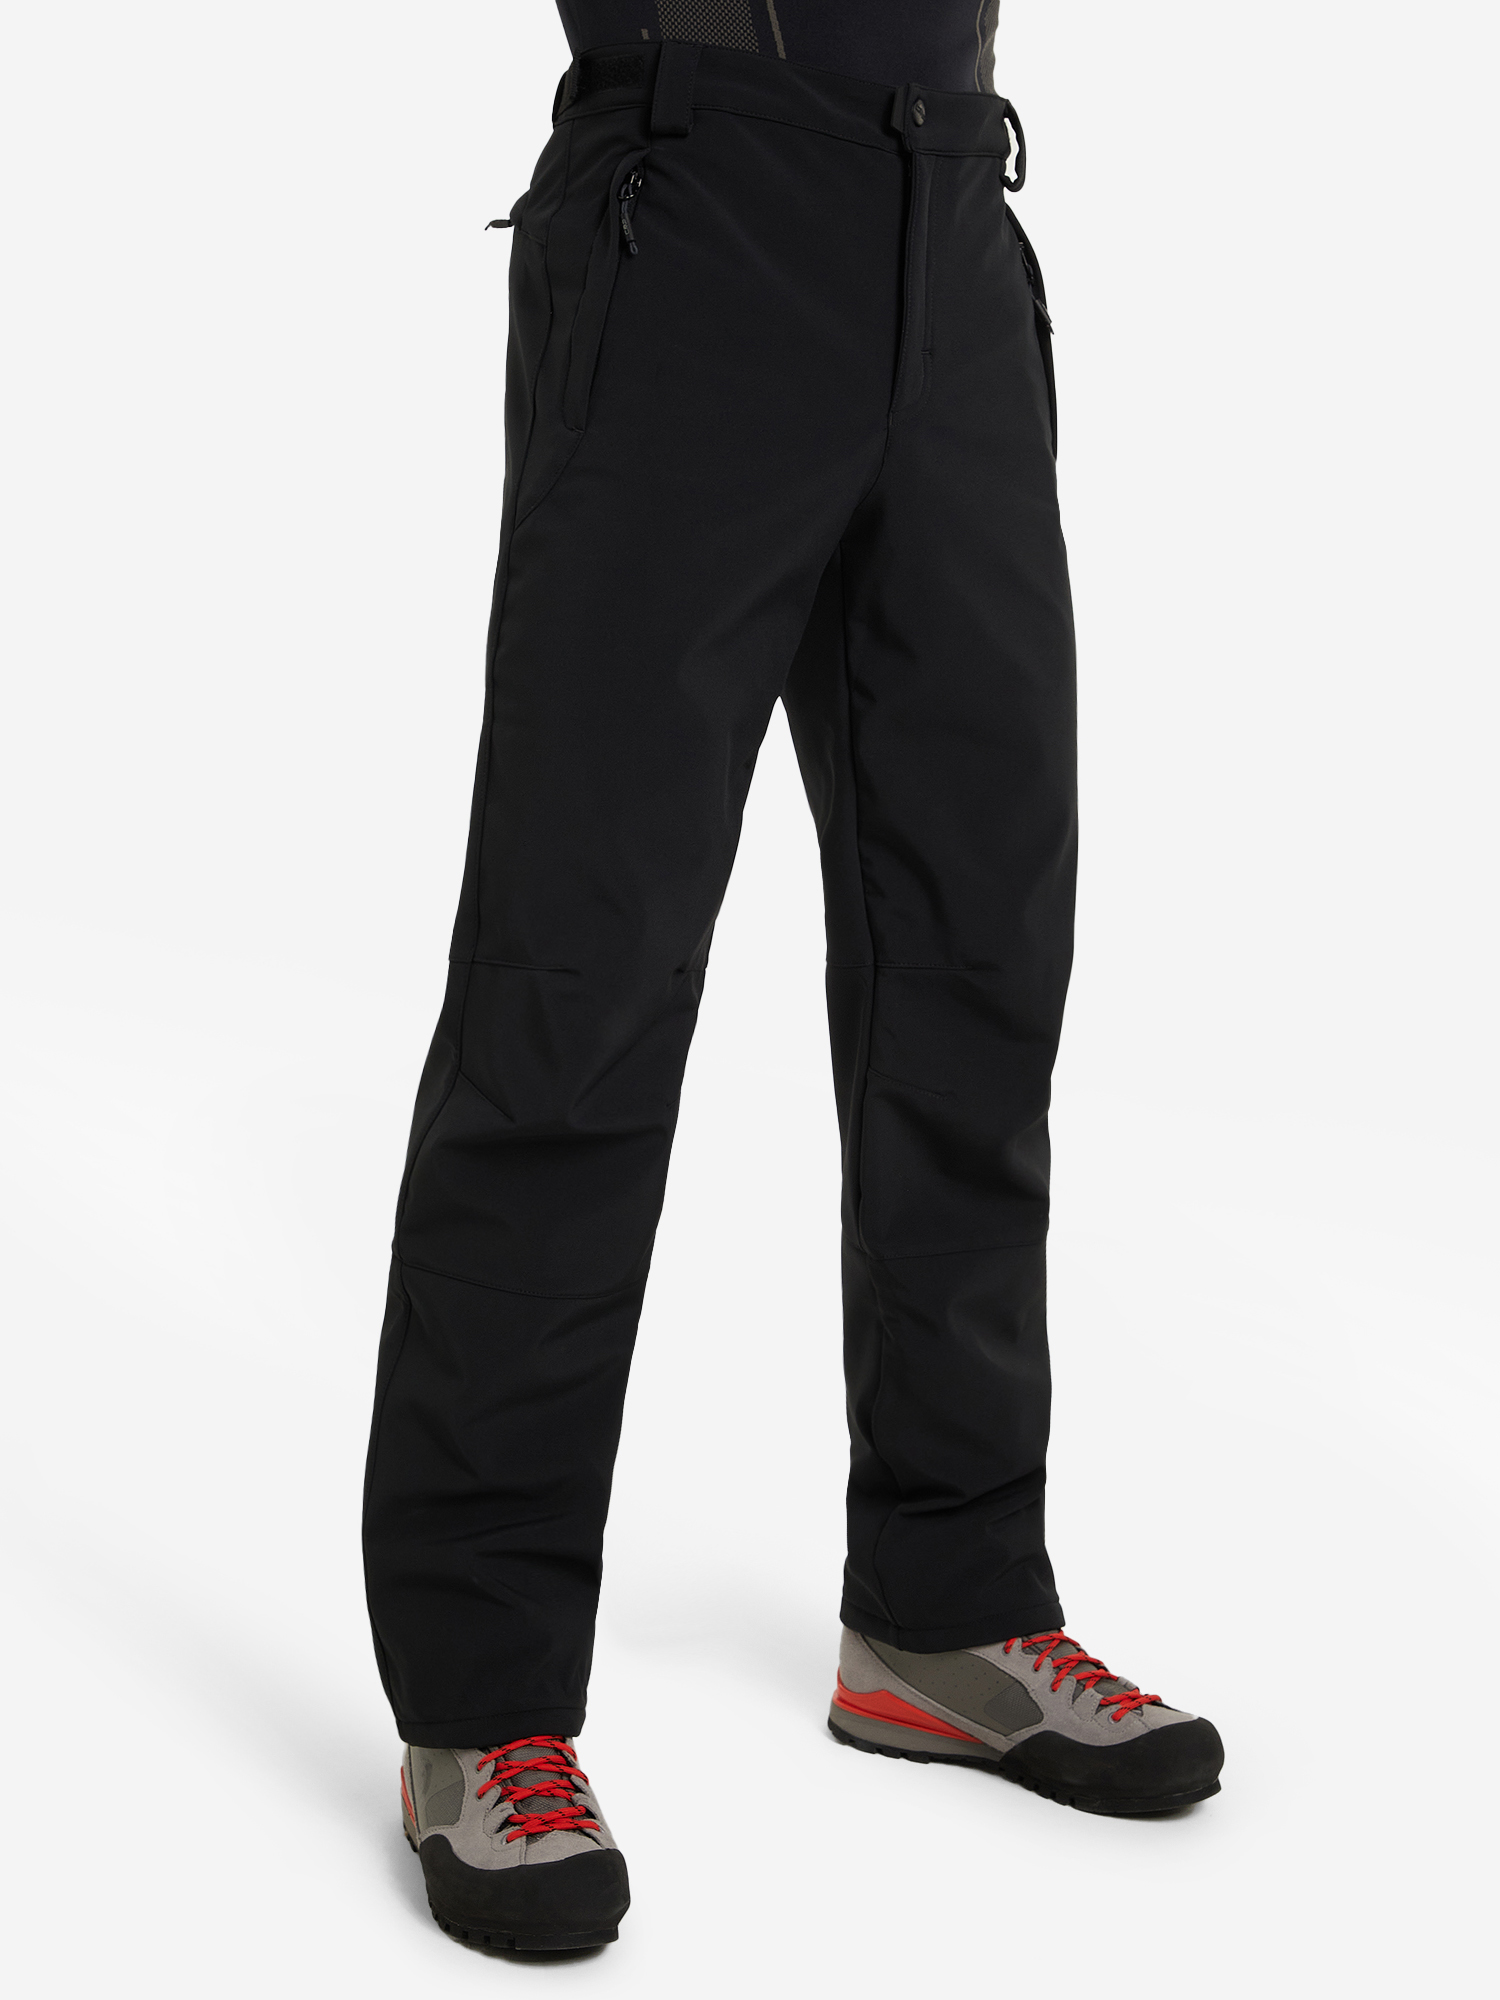 Мужские утепленные брюки от CMP, цвет черный.